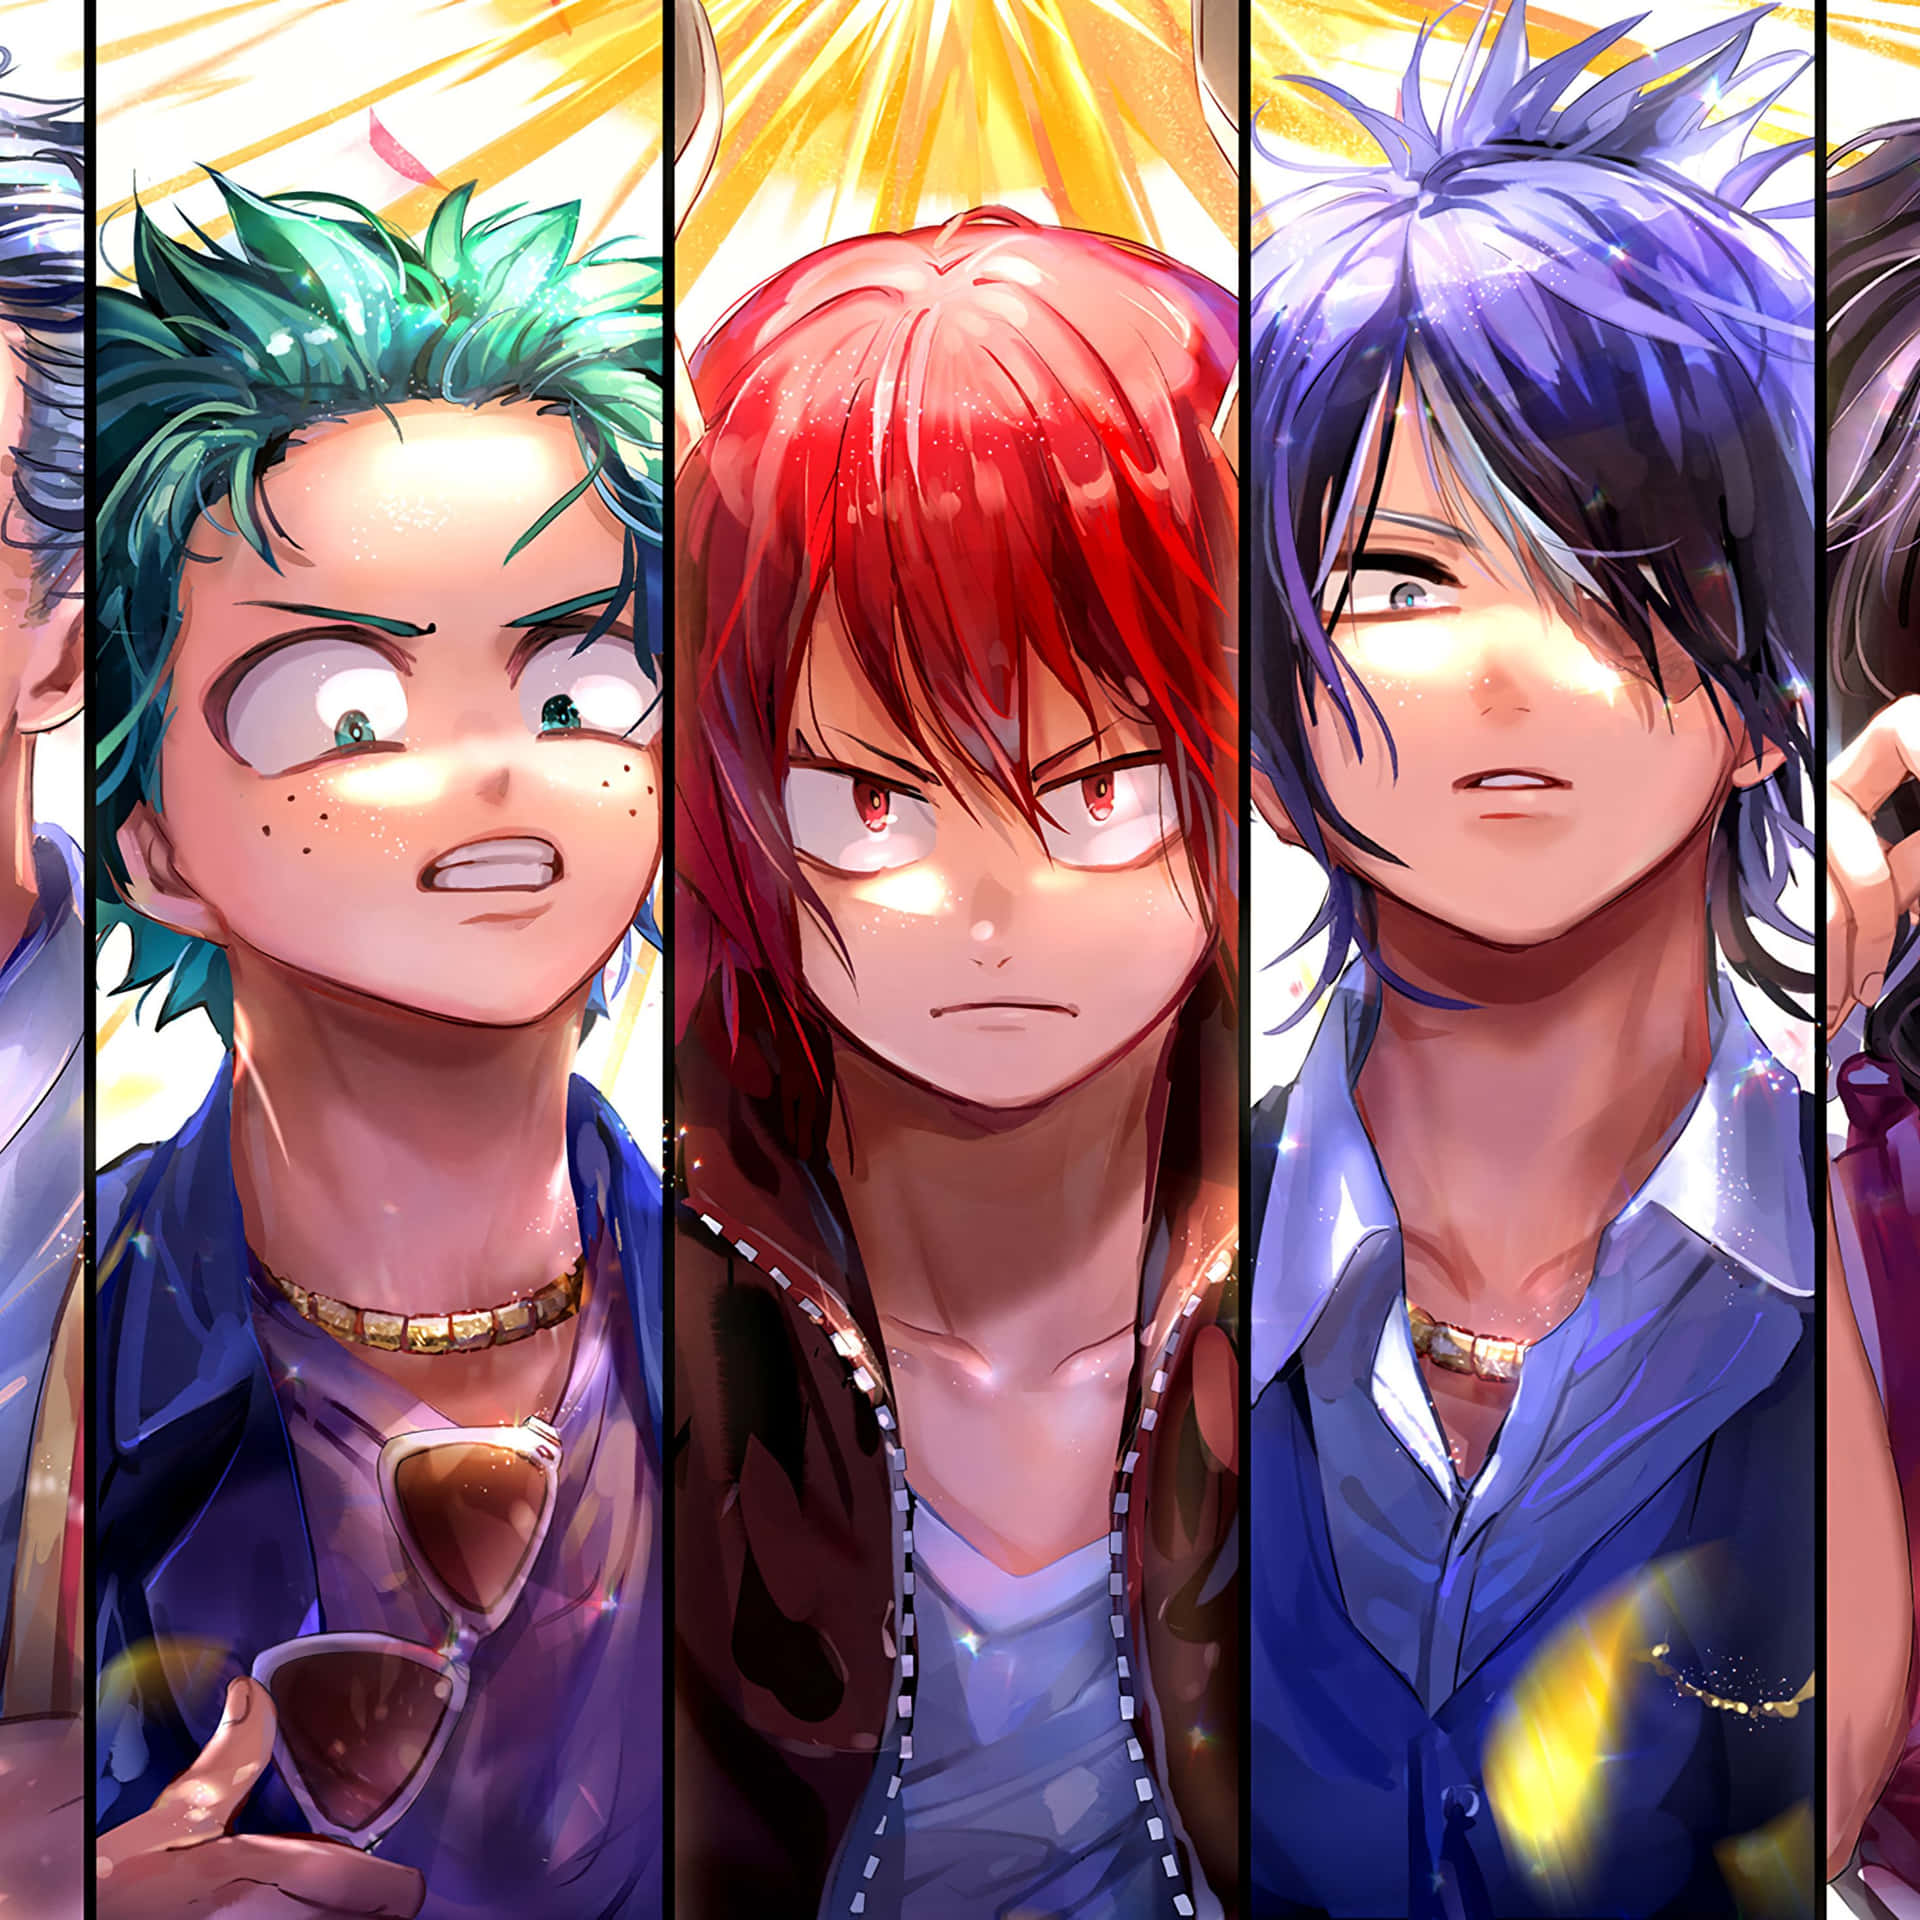 Einecollage Von Anime-charakteren Mit Unterschiedlichen Haarfarben. Wallpaper